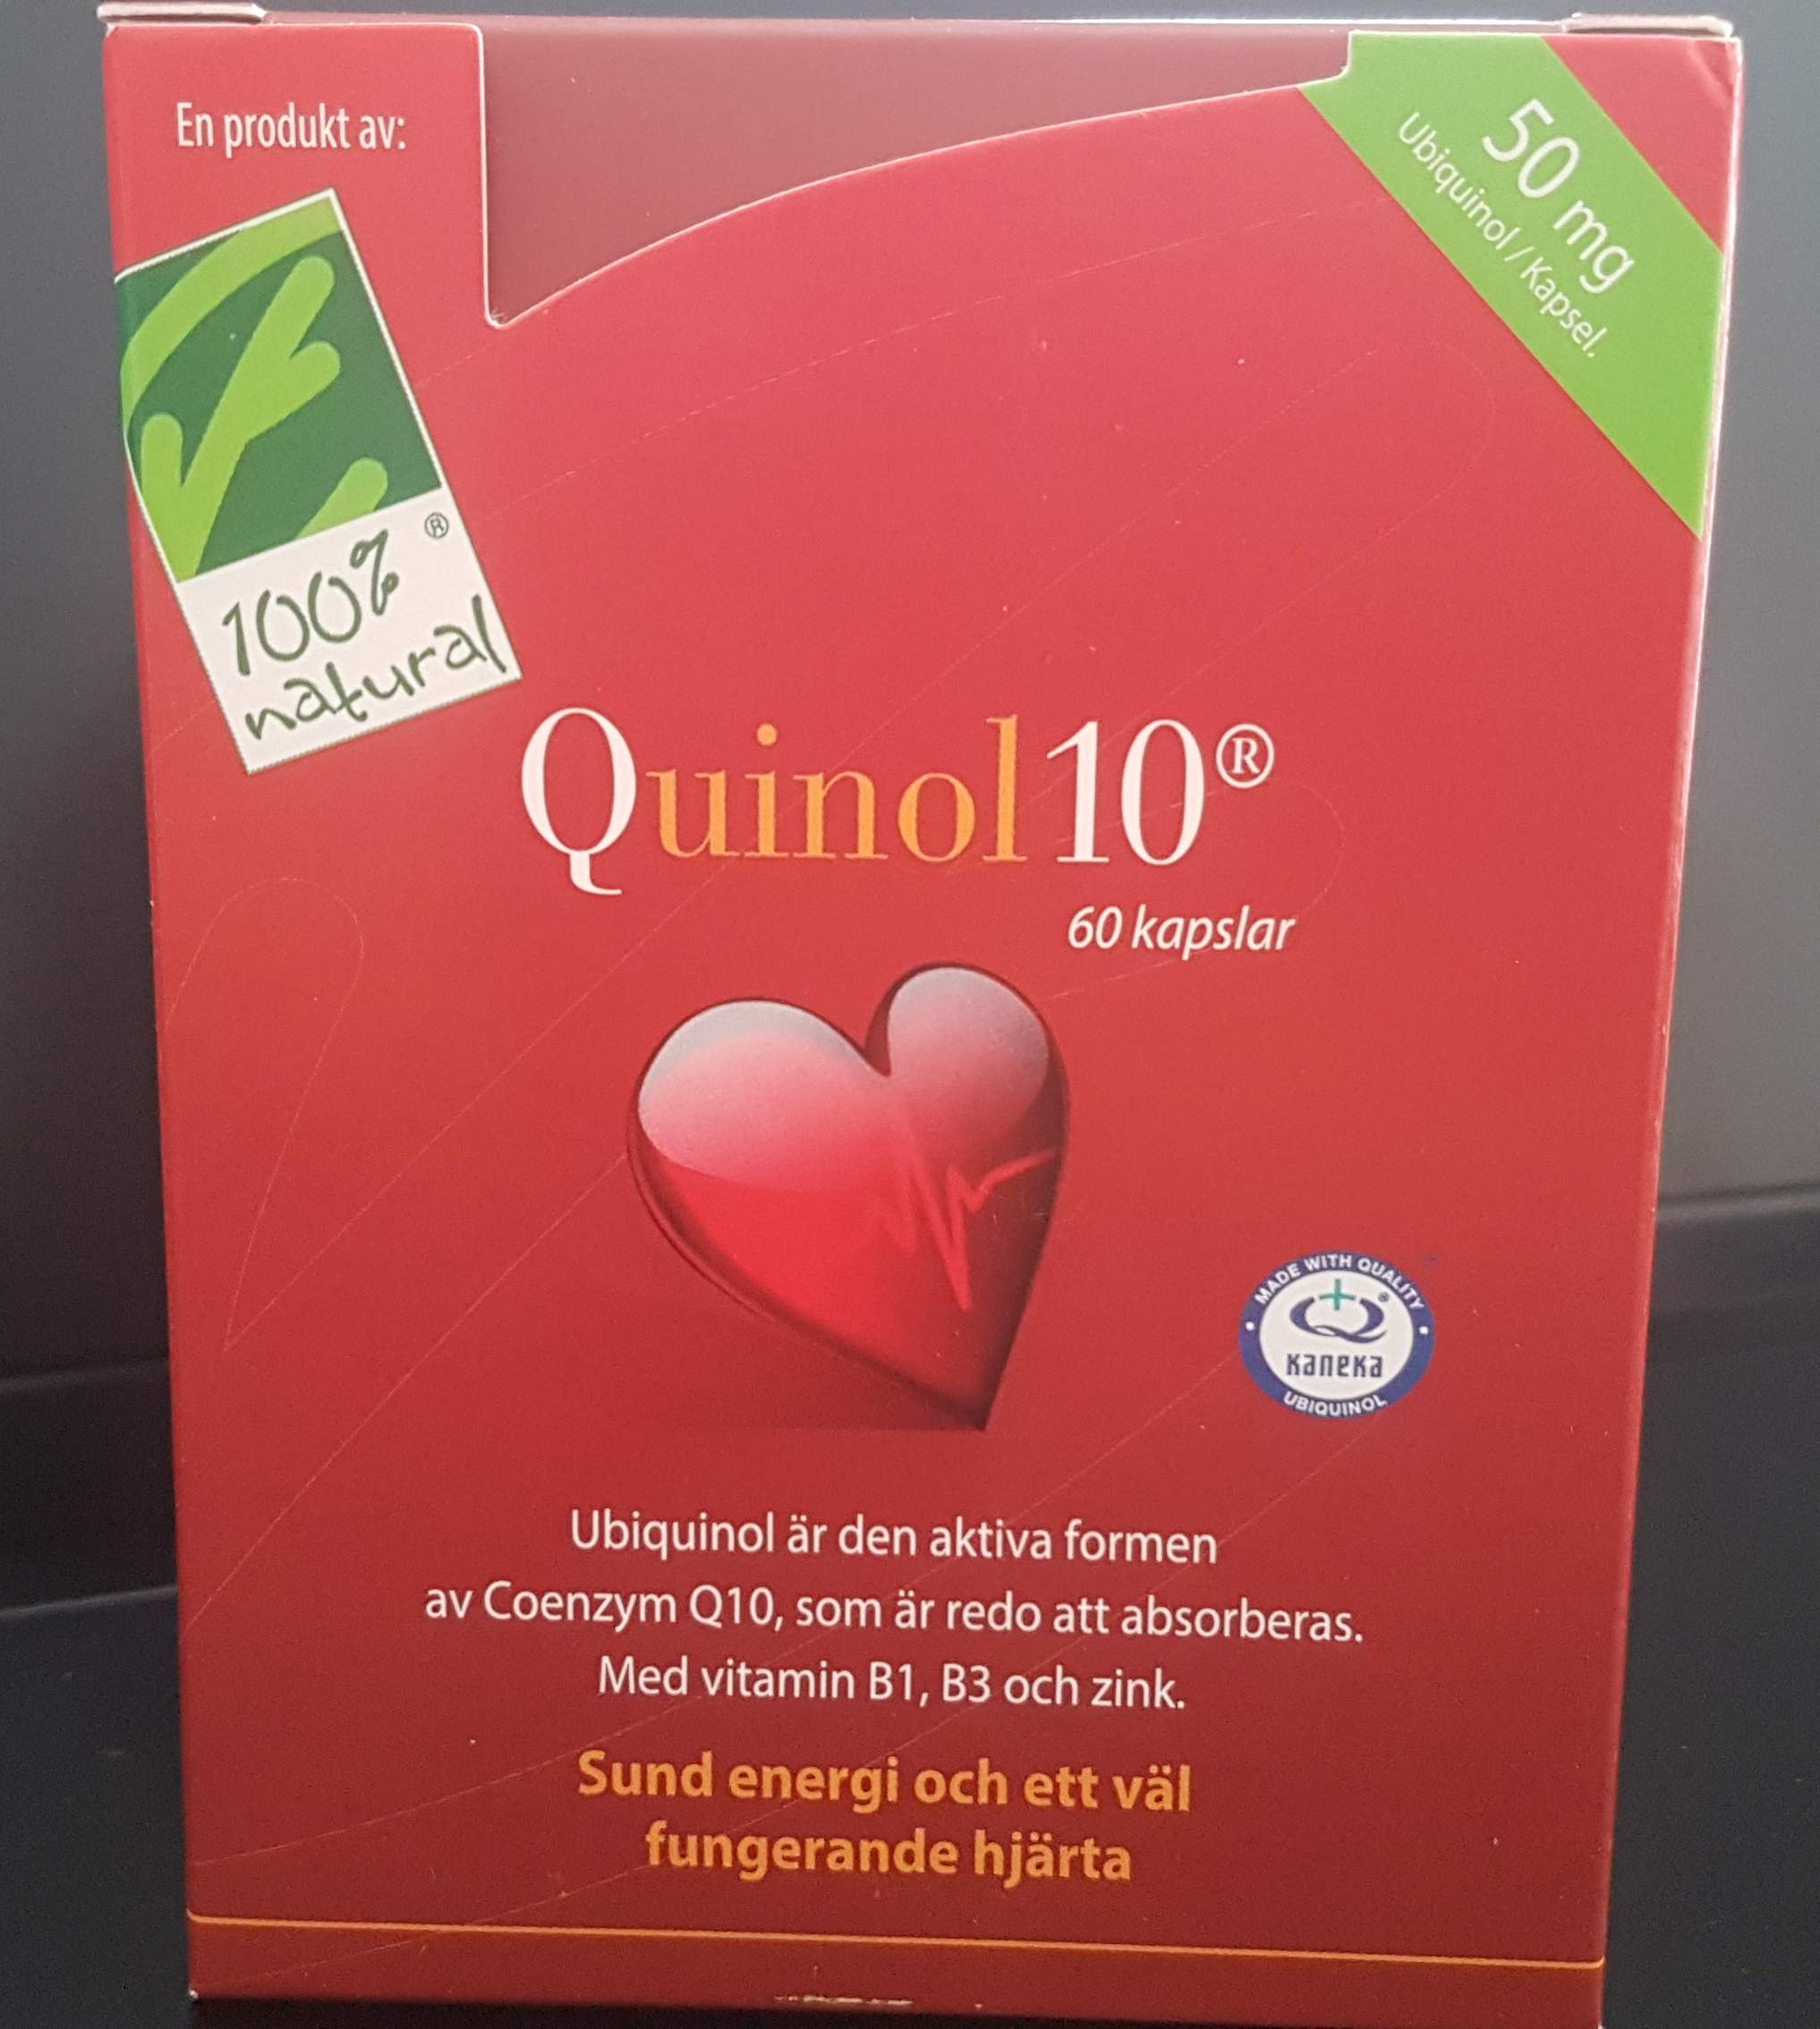 Quinol 10 (Ubiquinol), coenzym Q10